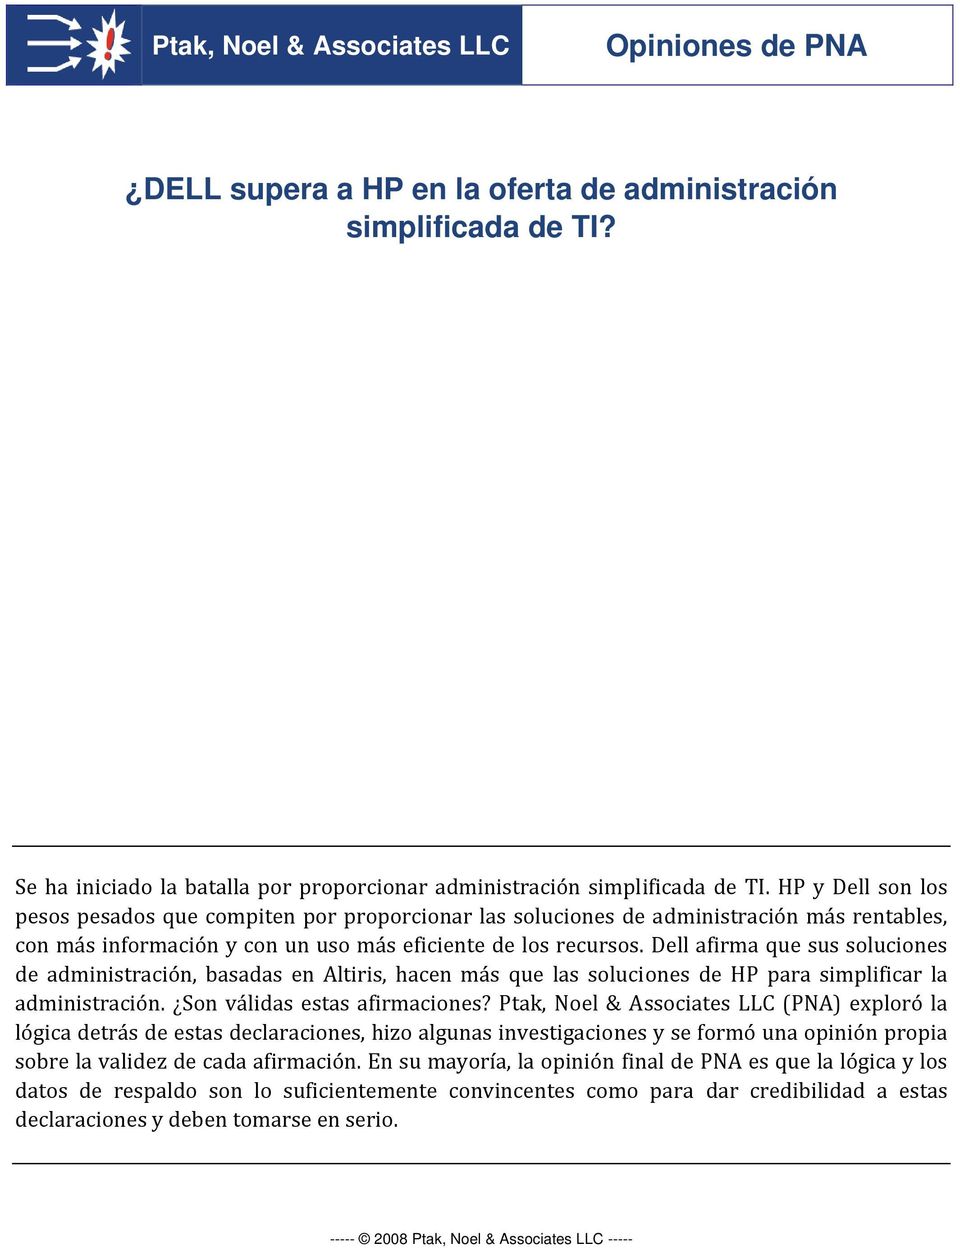 Dell afirma que sus soluciones de administración, basadas en Altiris, hacen más que las soluciones de HP para simplificar la administración. Son válidas estas afirmaciones?